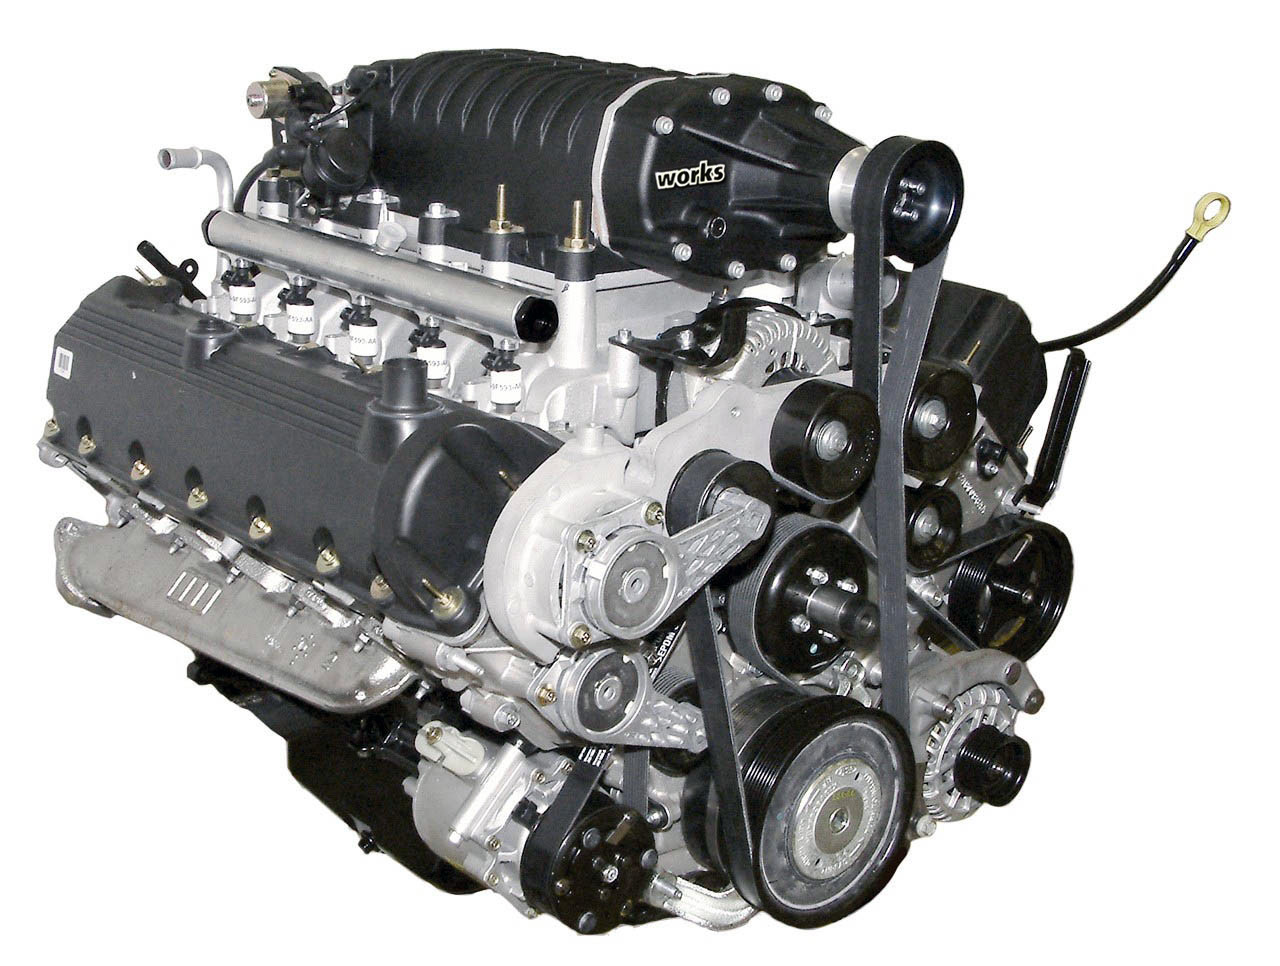 Gmc 6.8 litre engine #3